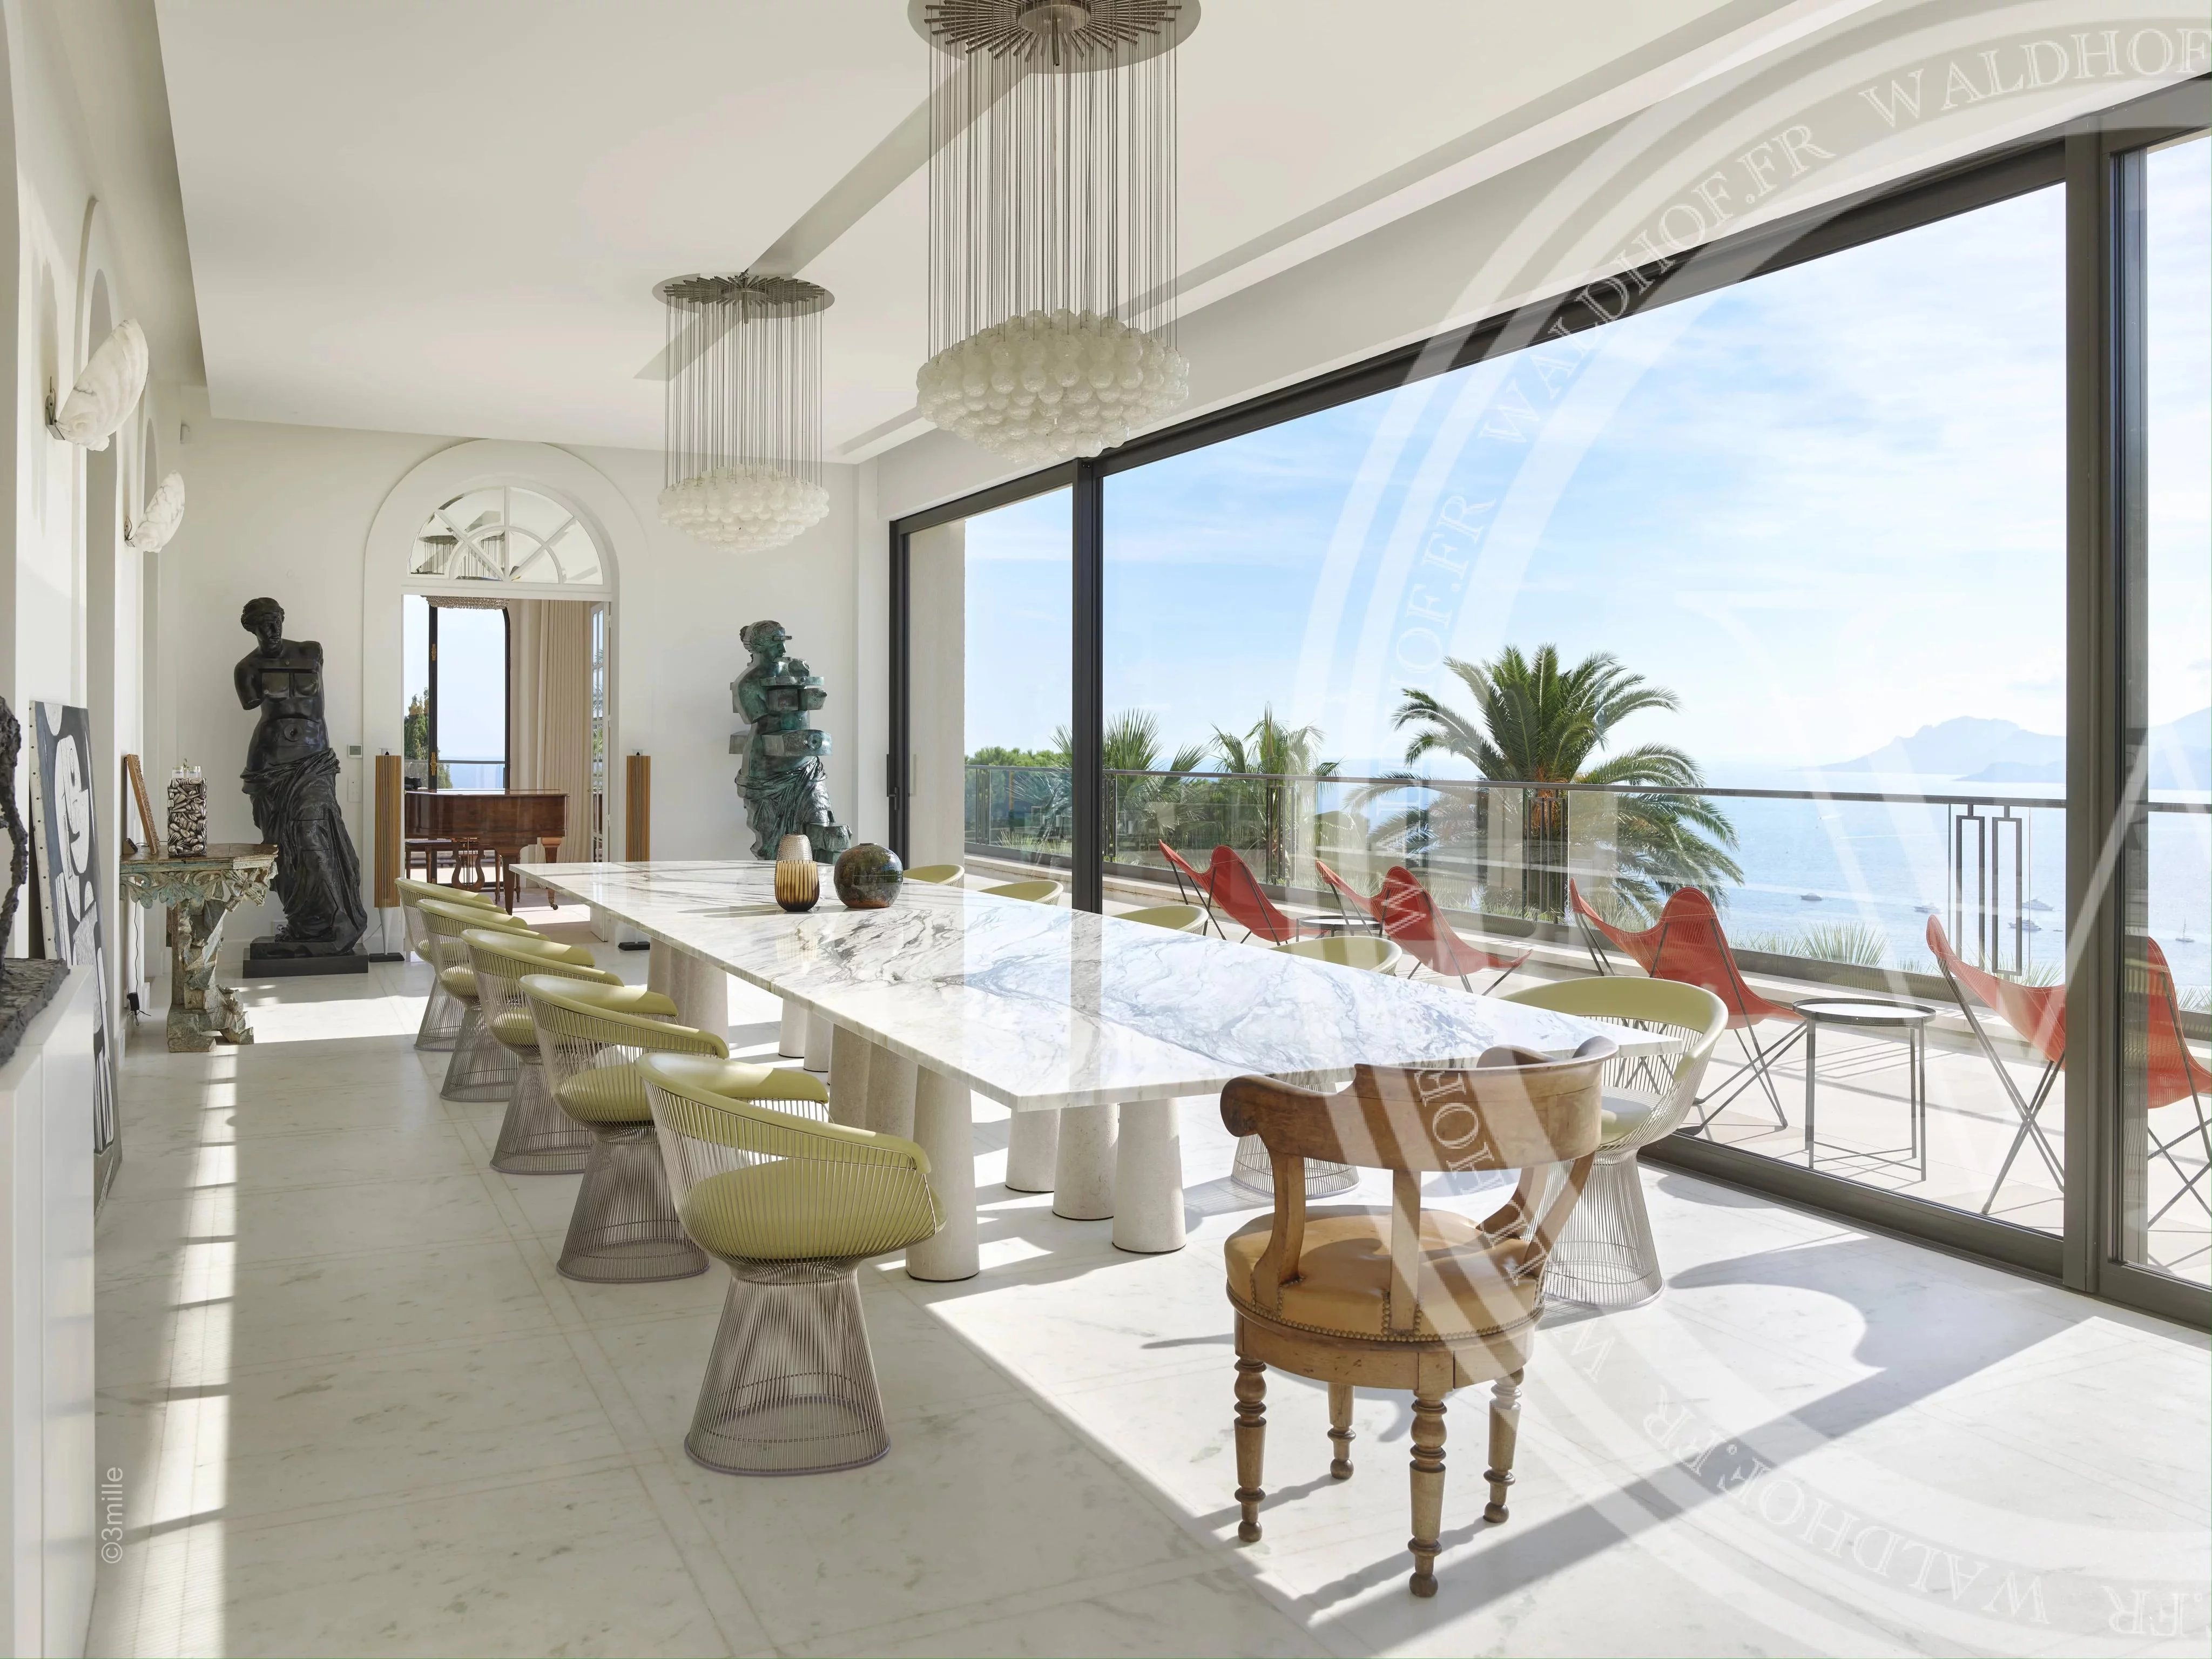 Palais de 2500 m² entièrement rénové surplombant toute la ville de Cannes